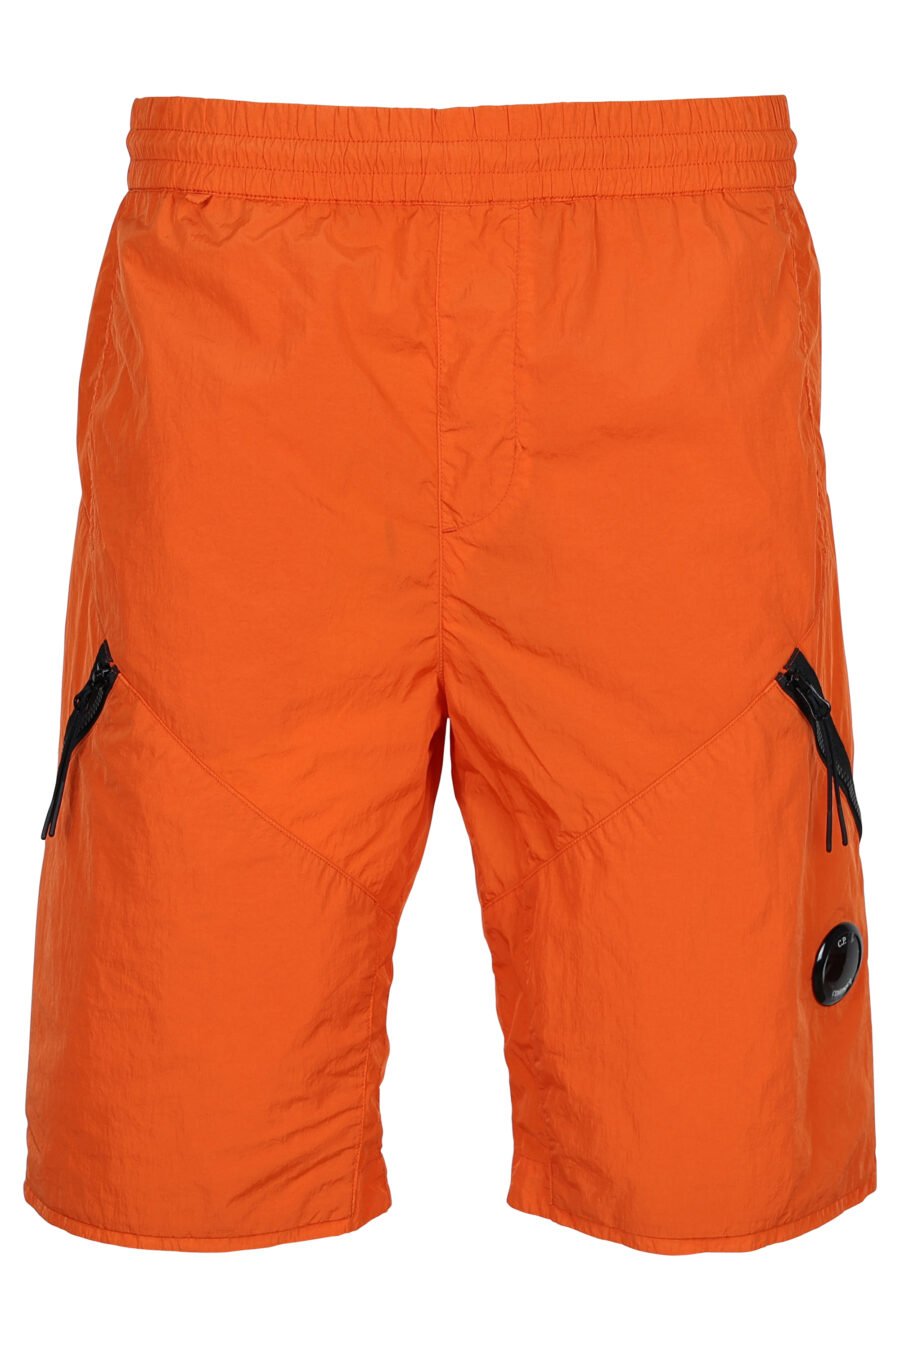 Orangefarbene Shorts mit diagonalem Reißverschluss und Linsenlogo - 7620943518290